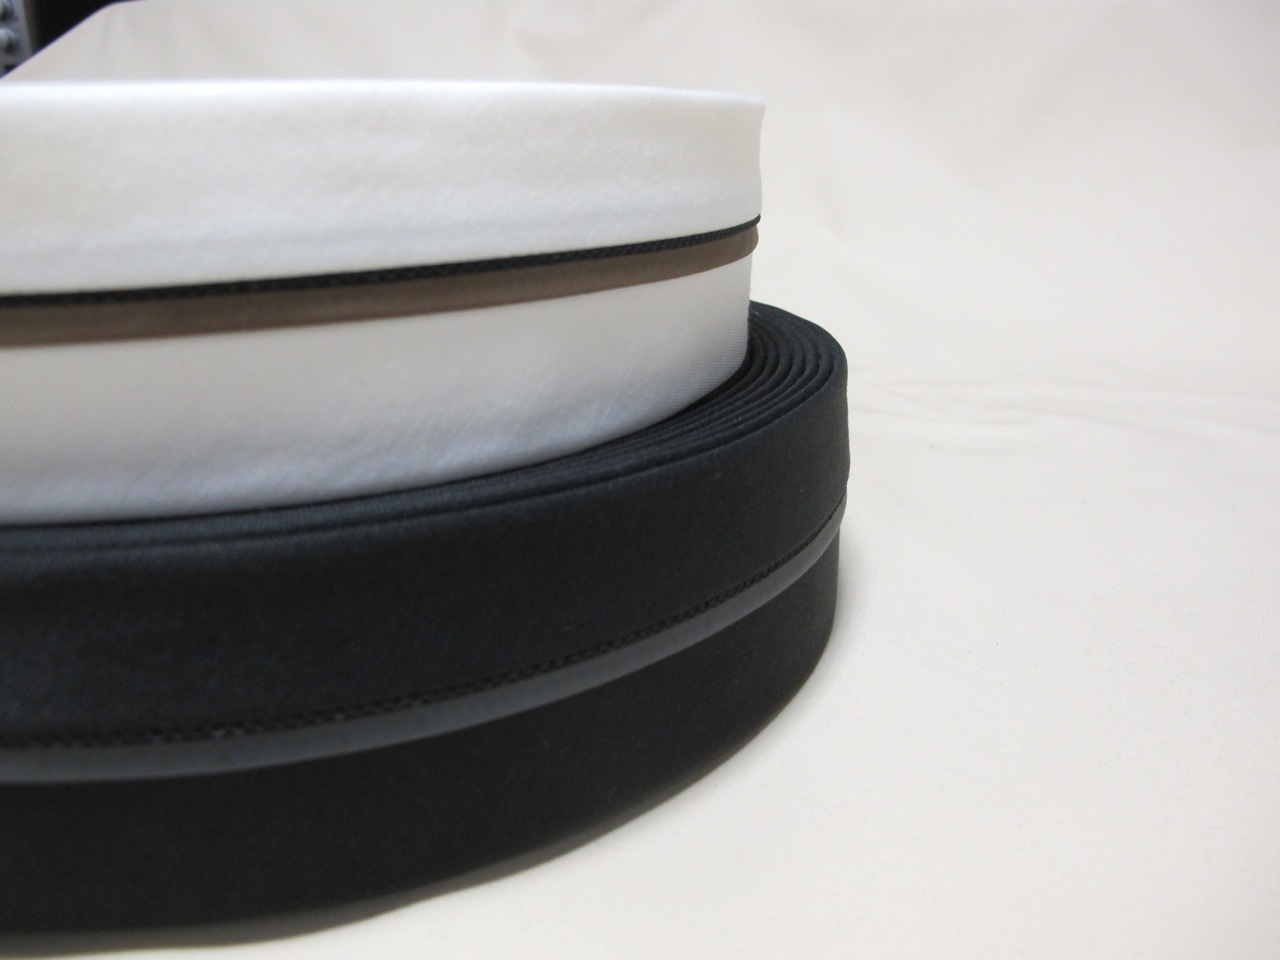 Hosenbund mit Hemdenstopper - Gewicht: 110 g/m² - Breite: 55 mm - Farbe: schwarz